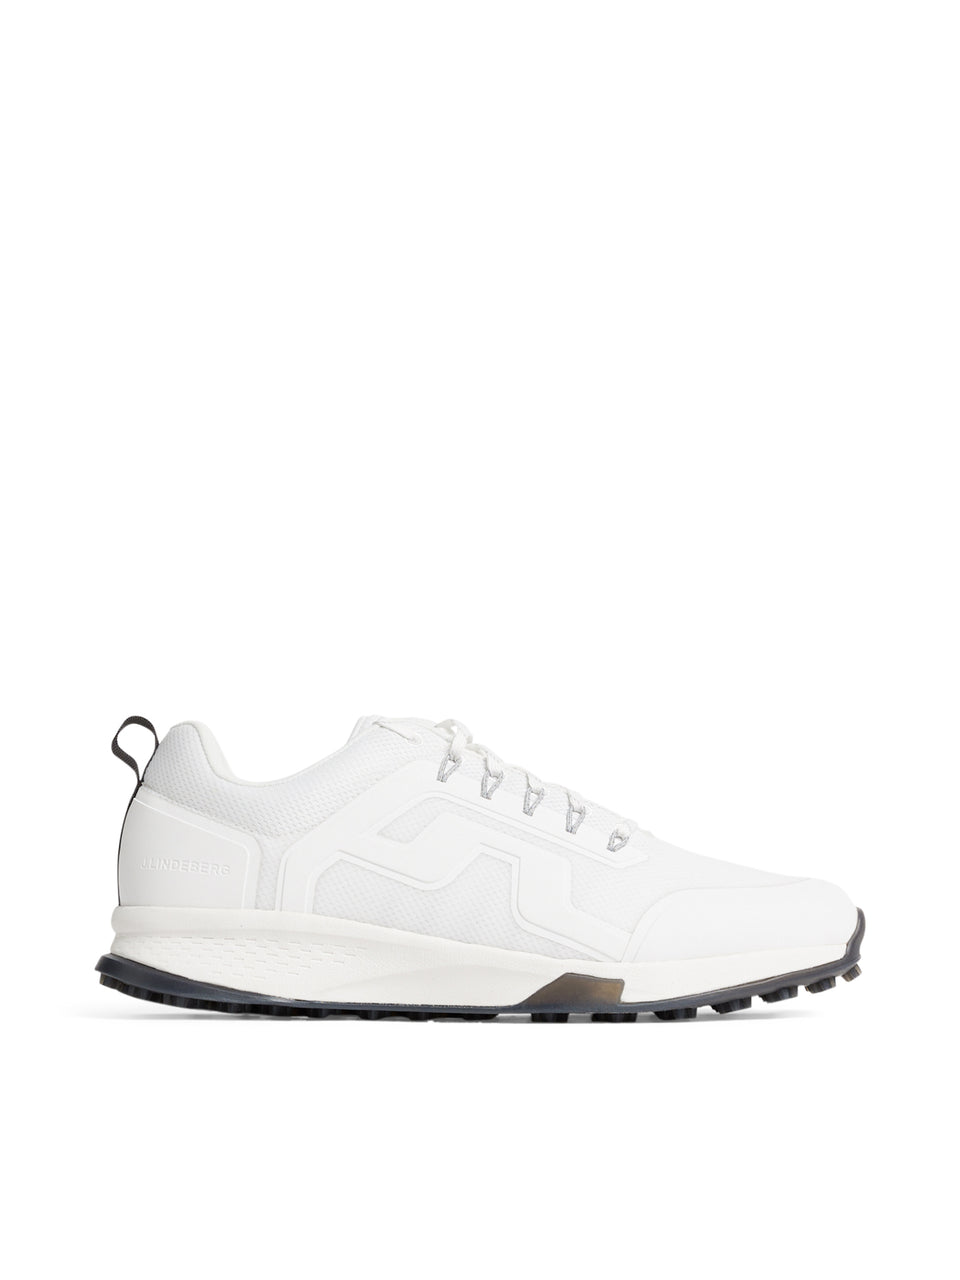 Range Finder Golf Sneaker W / White